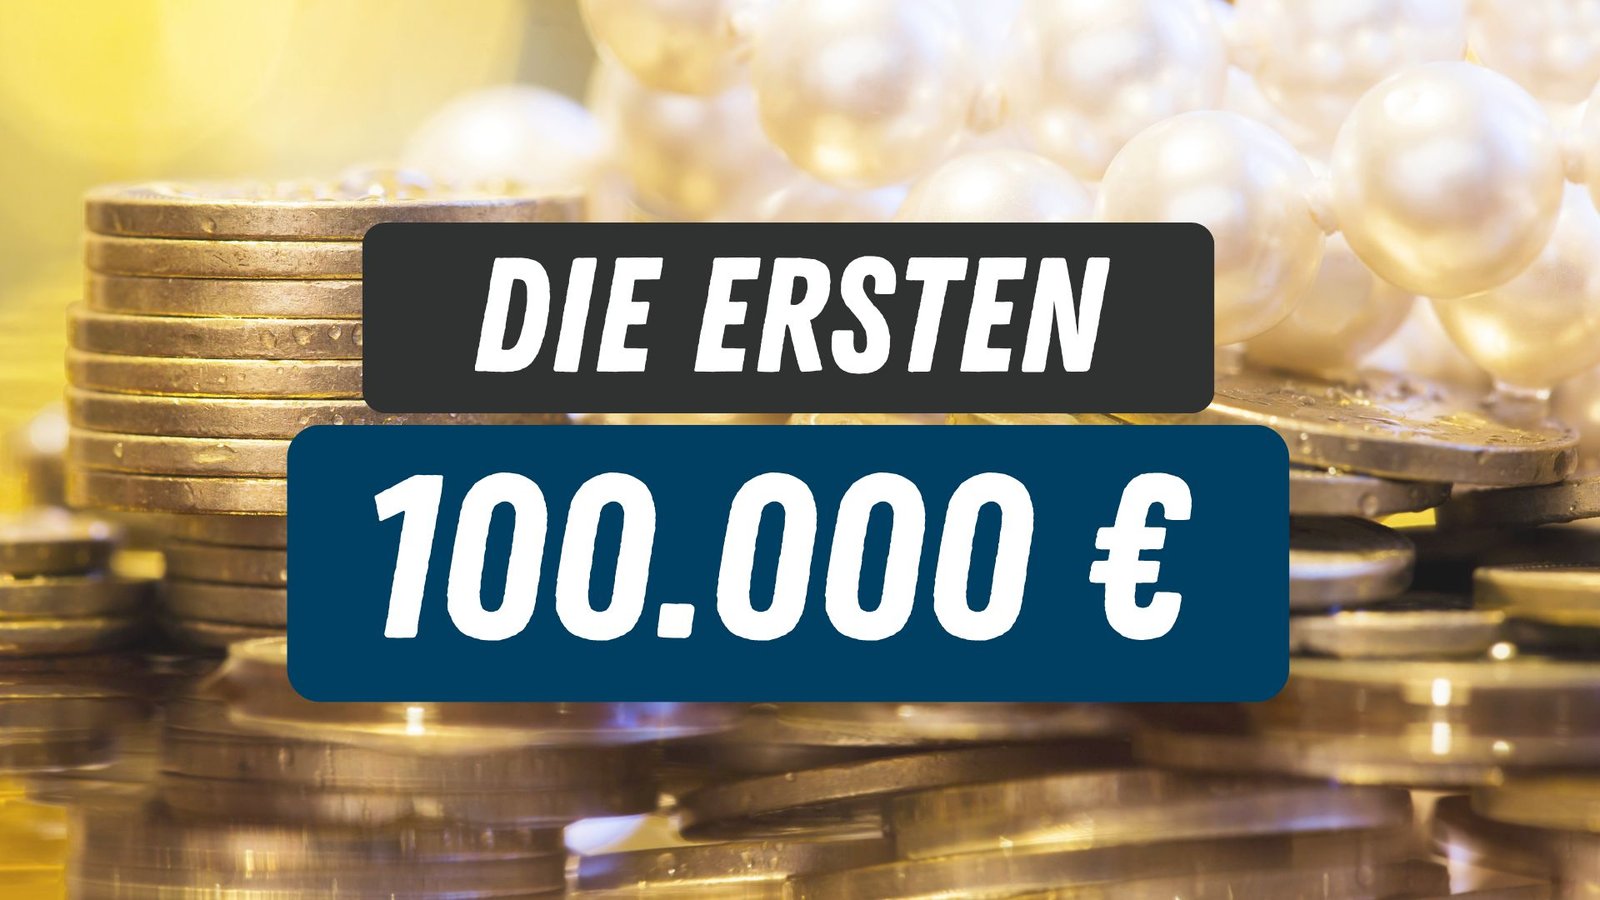 Die ersten 100.000 €